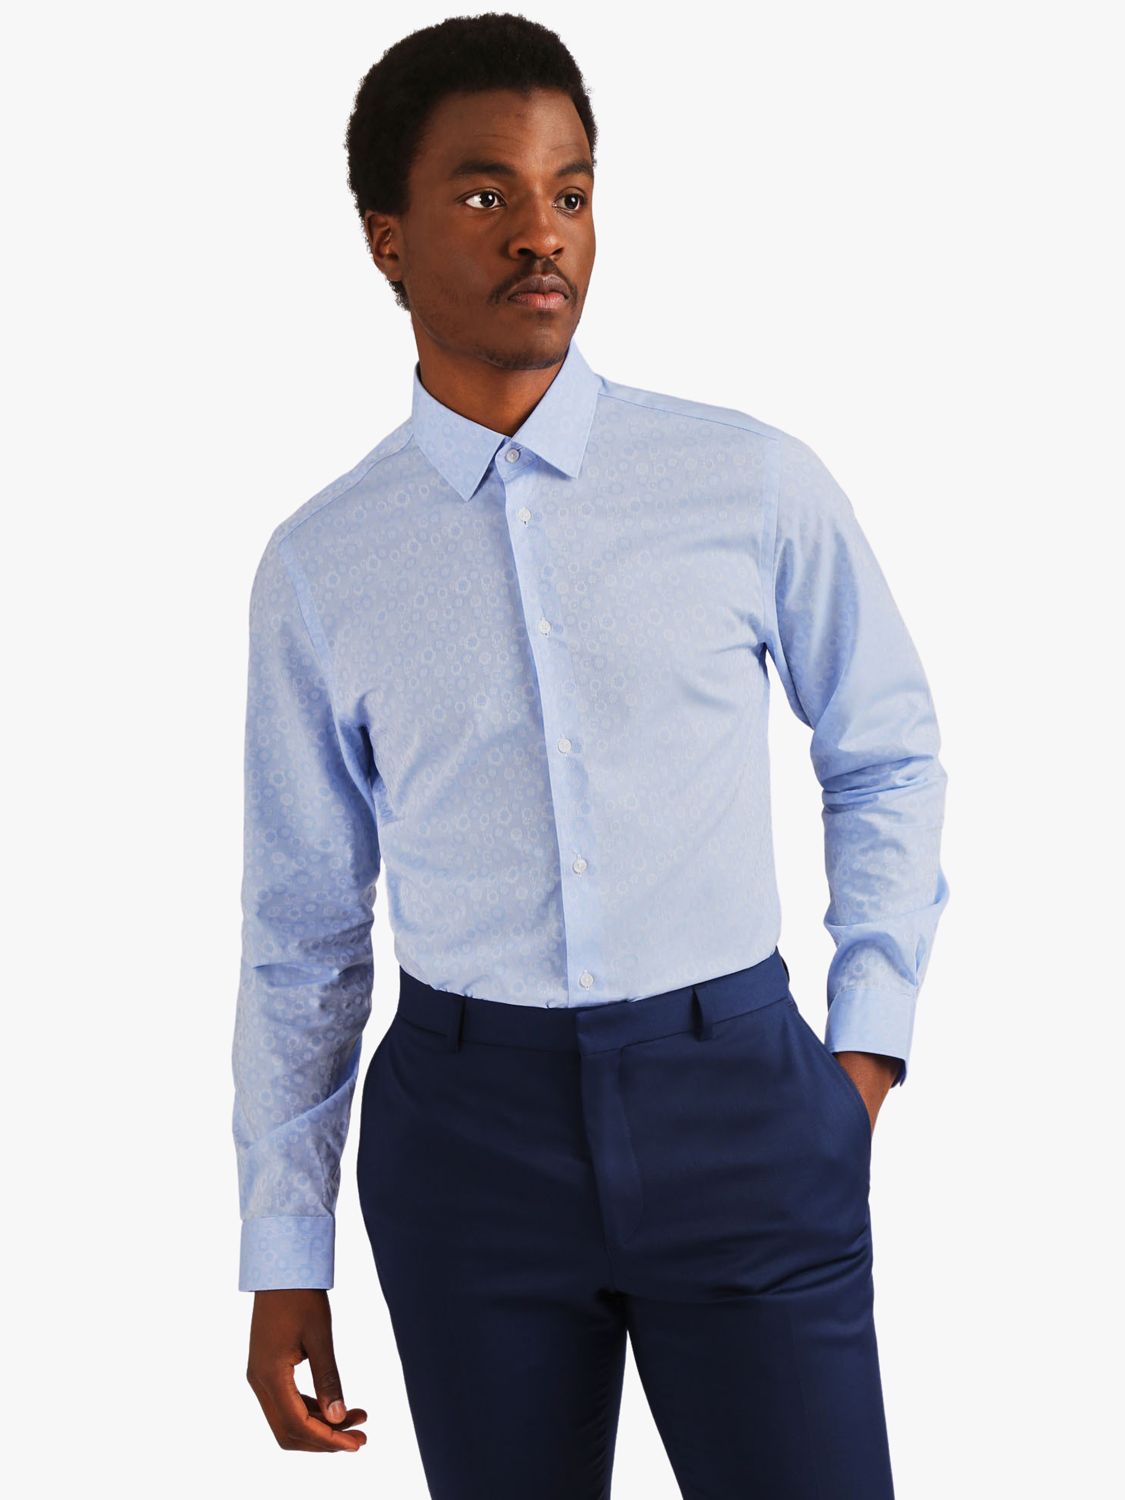 Ted Baker Fara Floral Slim Fit Shirt, Light Blue at John Lewis & Partners